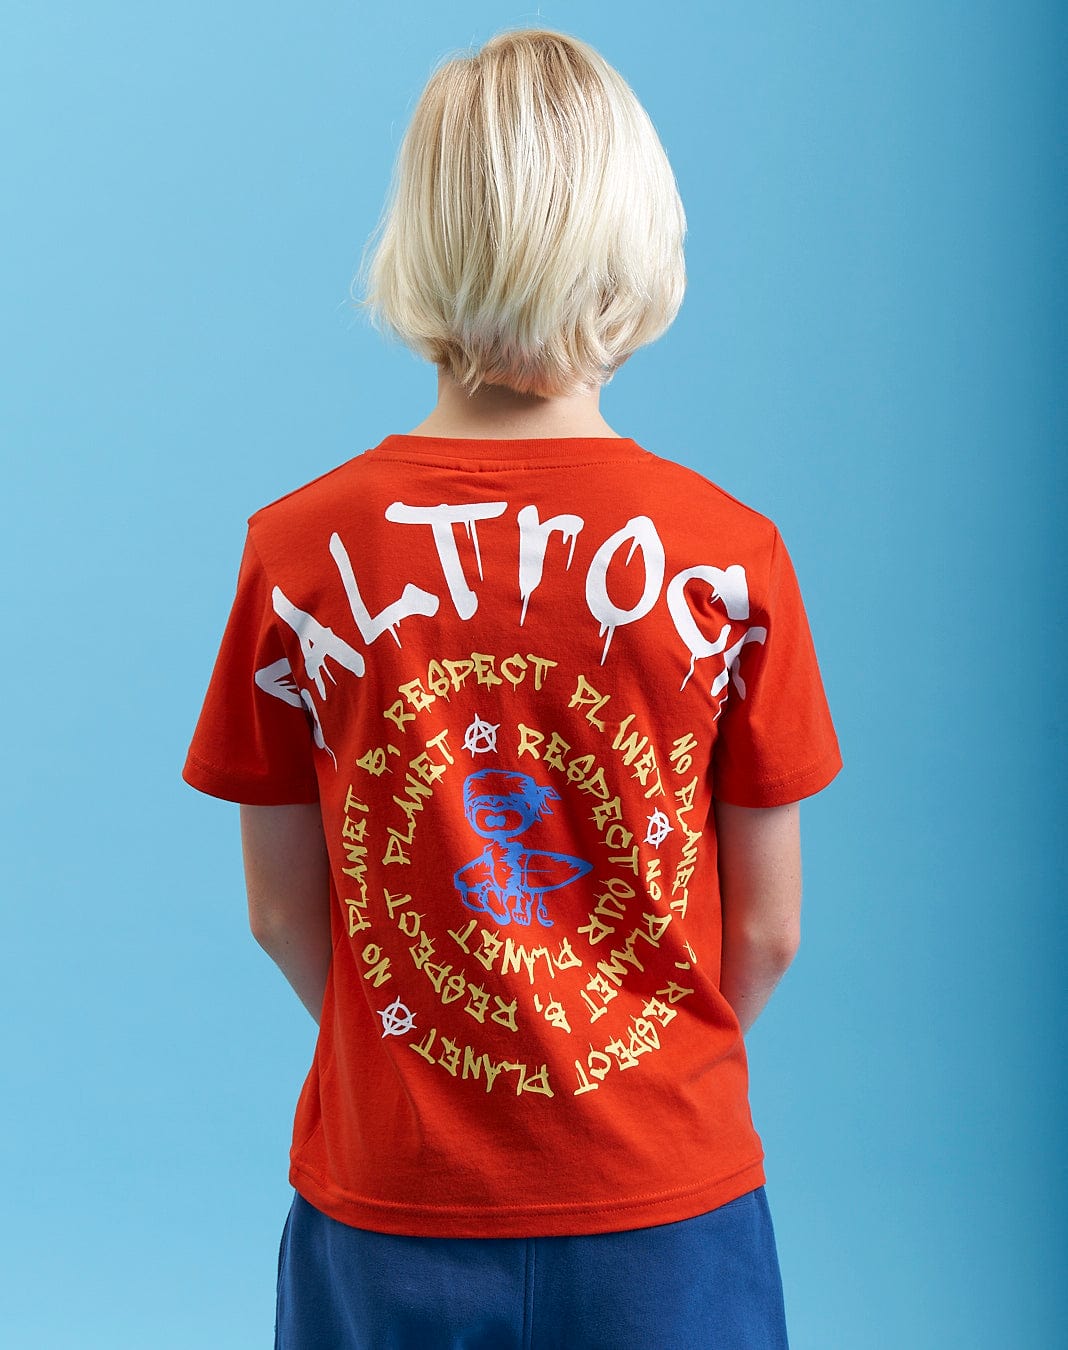 Activist A - Kids Short Sleeve T-Shirt - Red